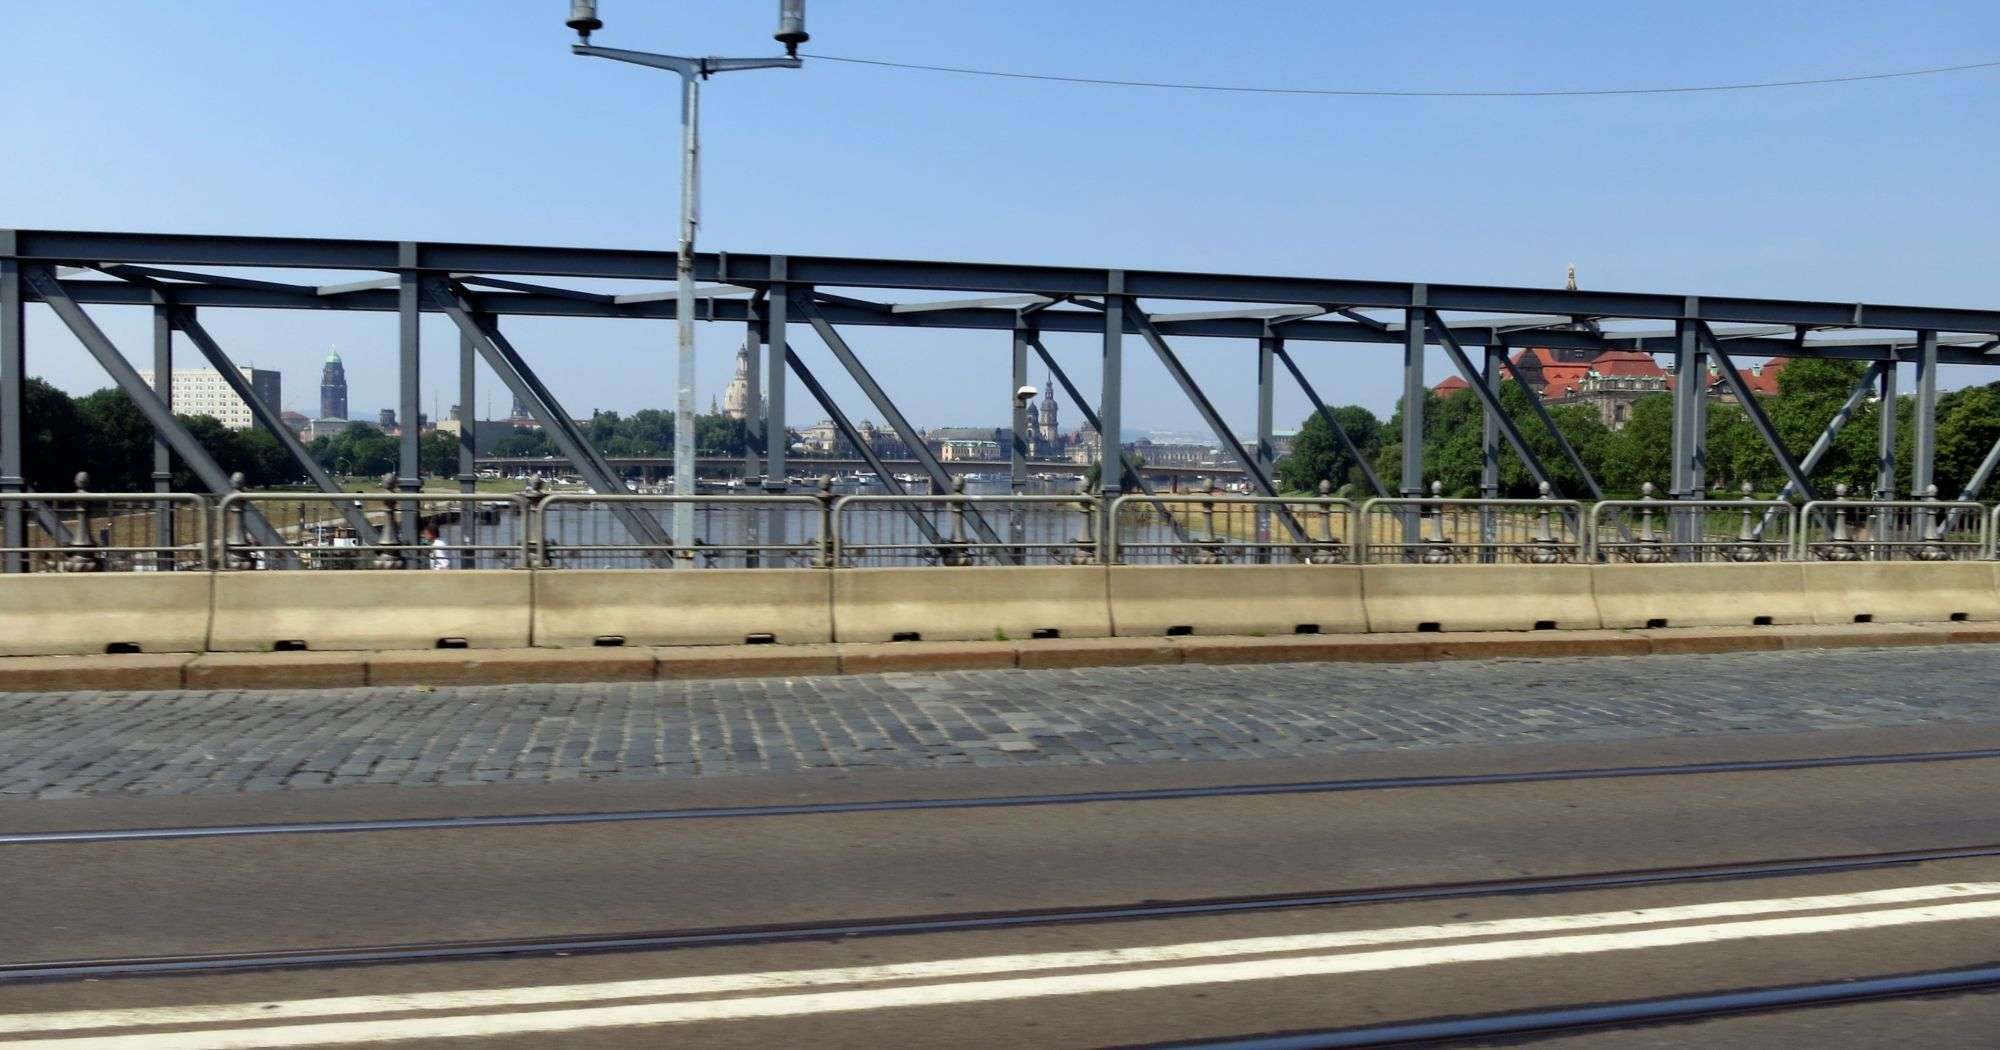 Albertbrücke mit Blick auf das Radfahr- und Fußgängerprovisorium